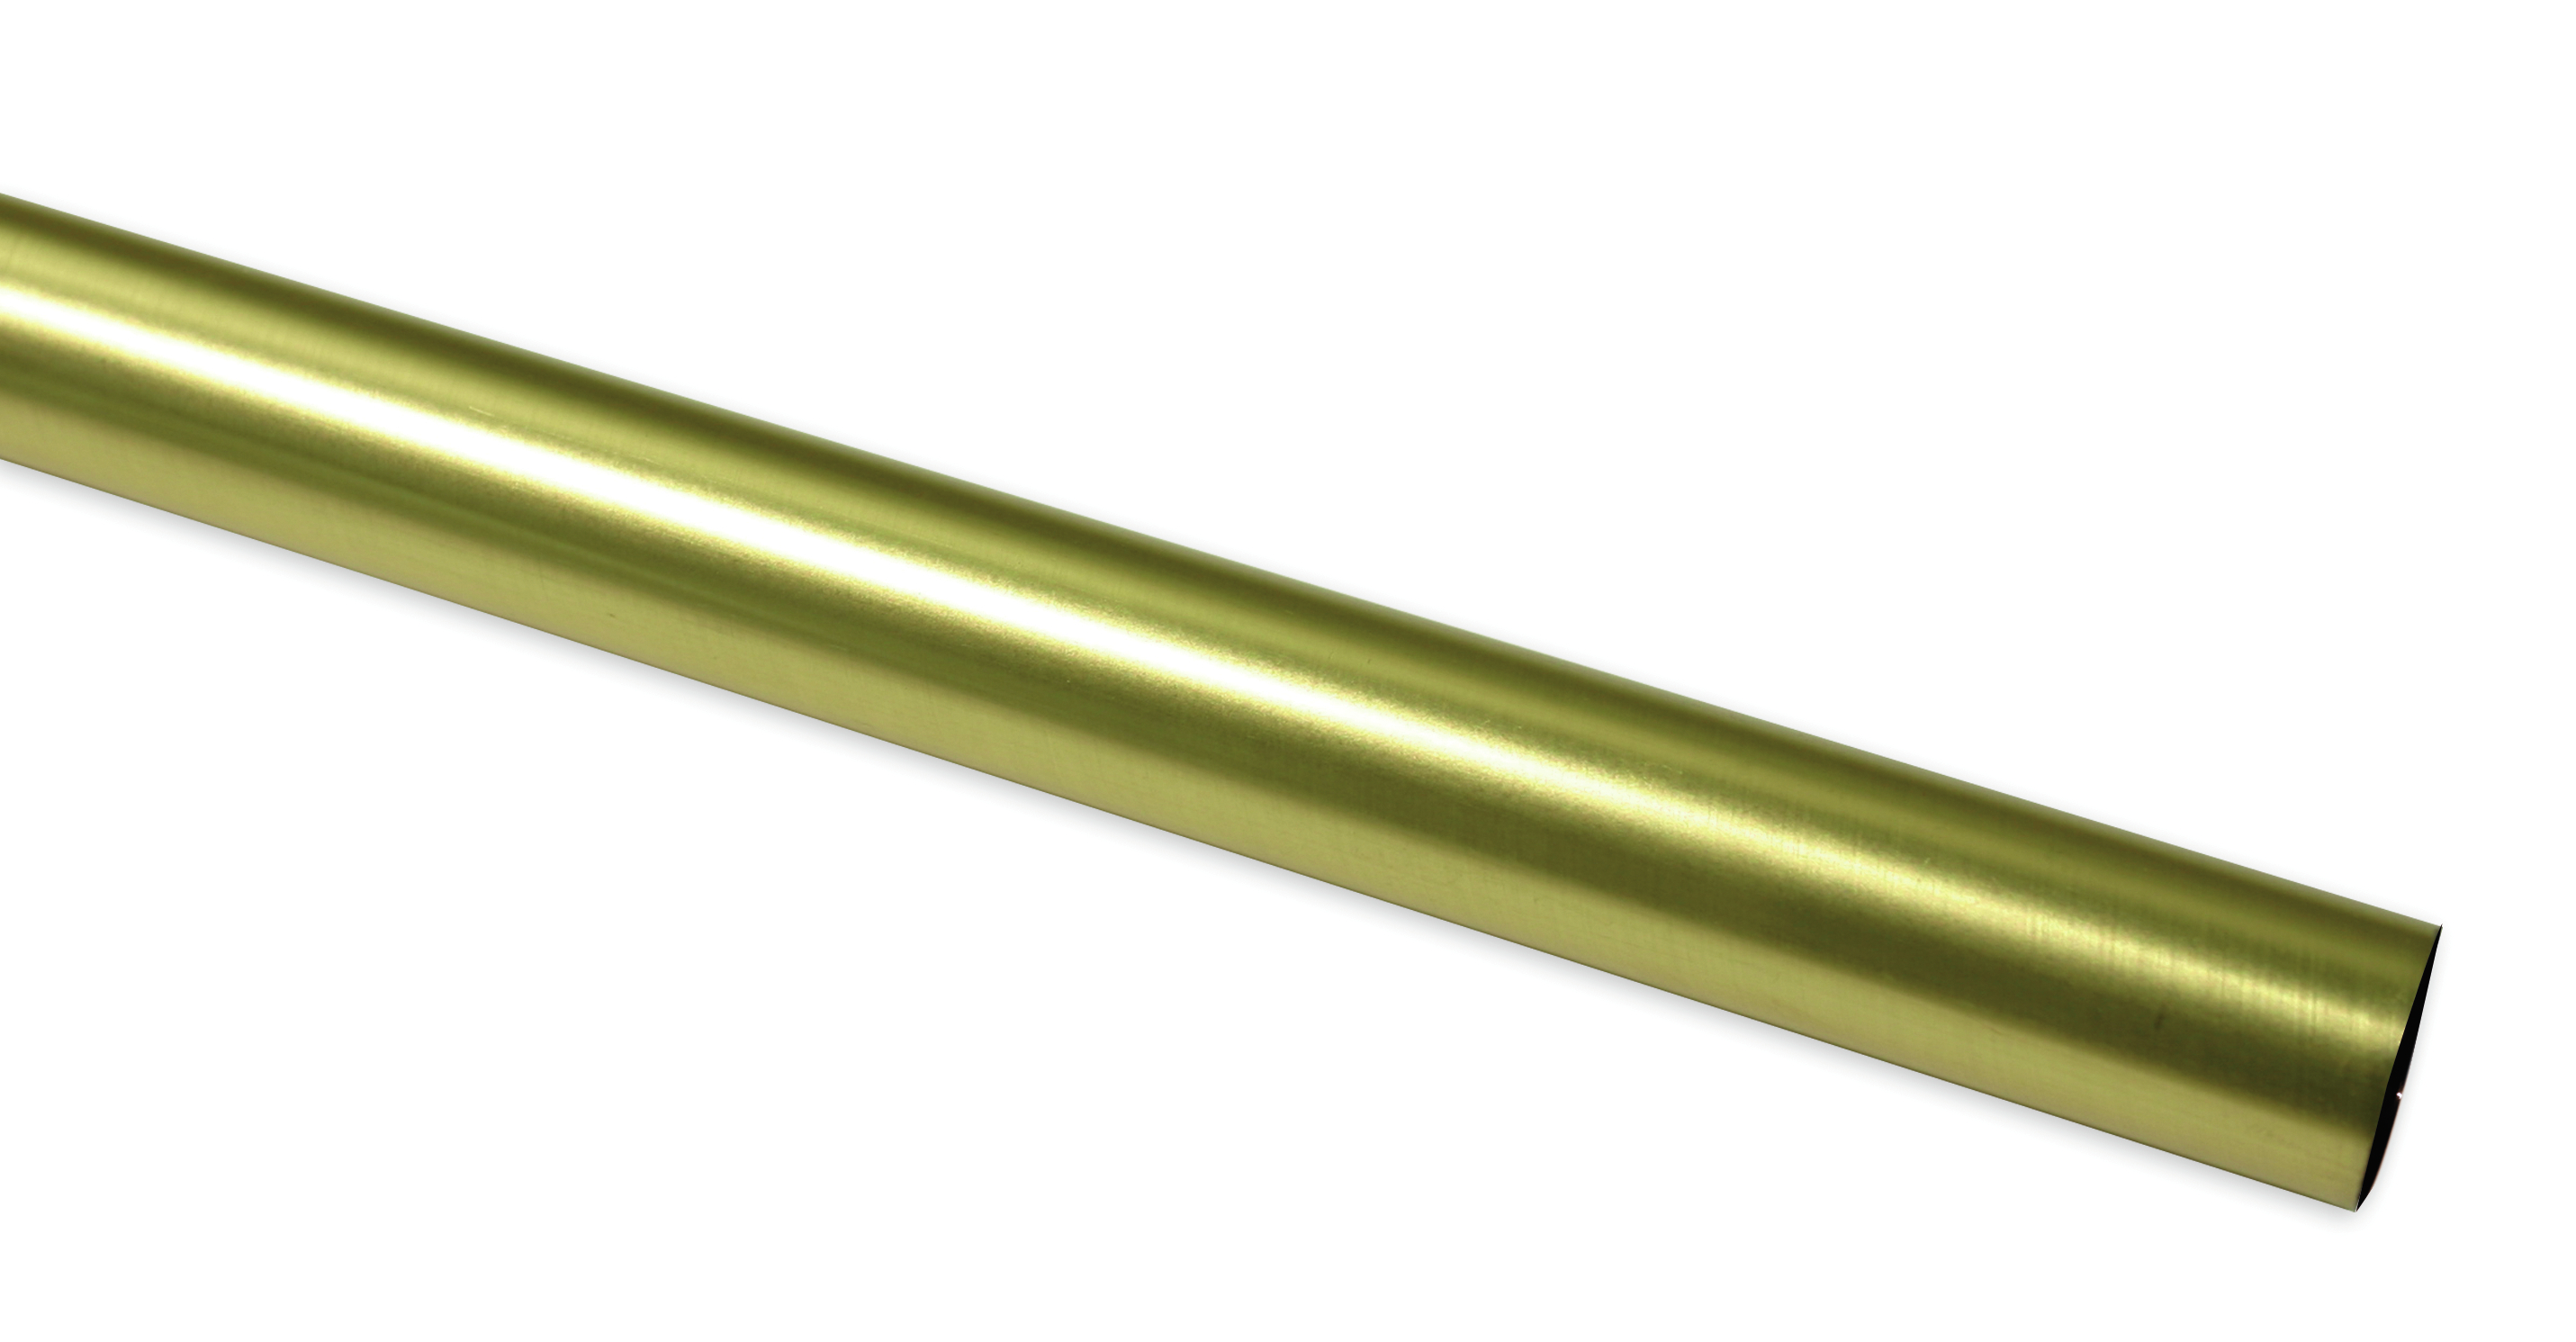 Záclonová tyč Europa 19/240cm, zlatá antika (Kov, od délky tyče 200cm doporučujeme použít třetí nosník.)